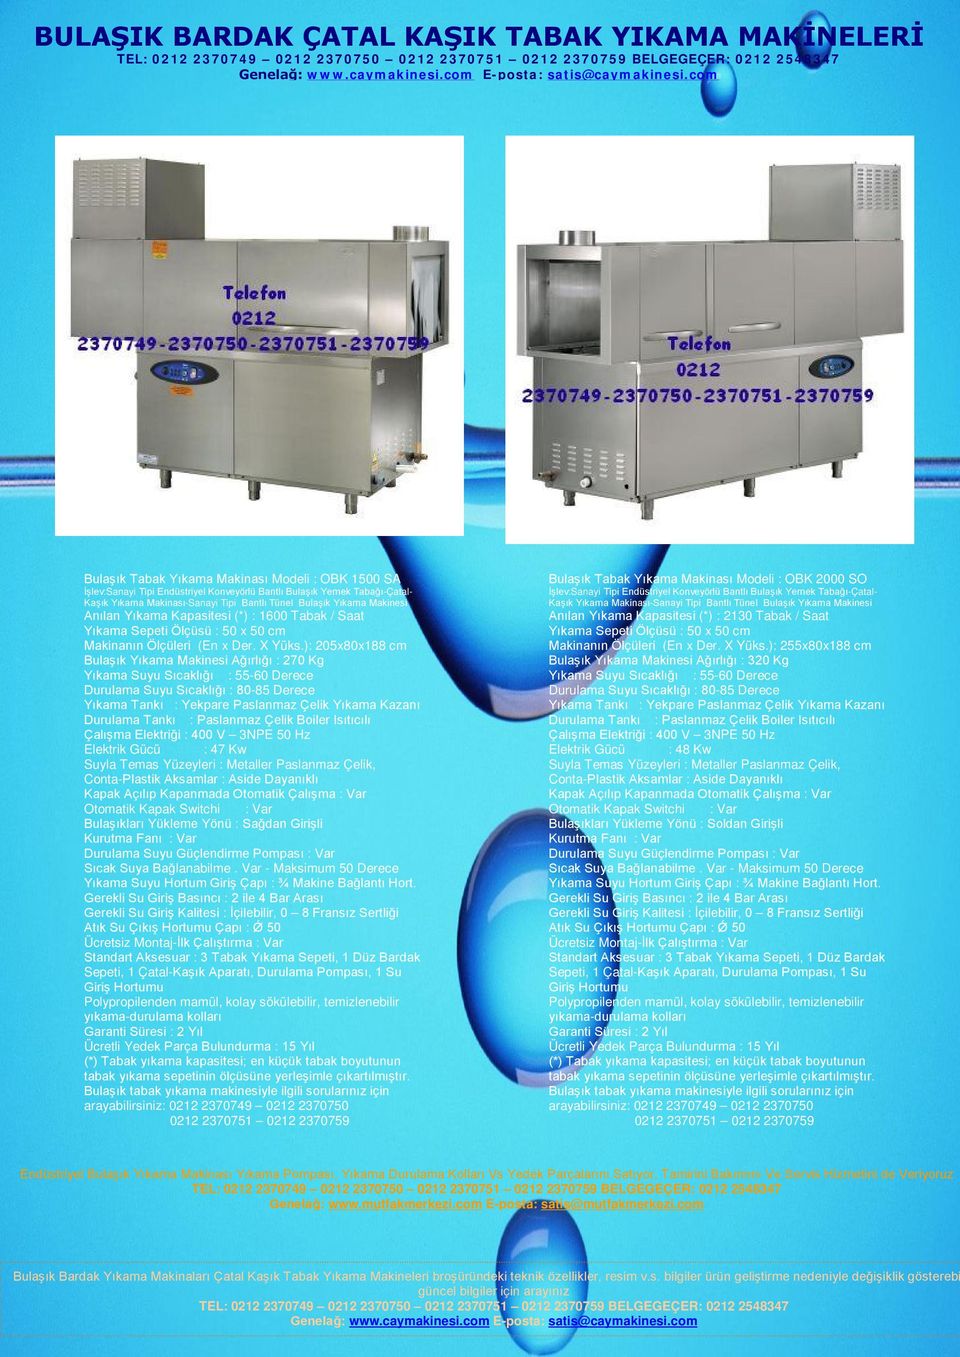 Girişli Bulaşık Tabak Yıkama Makinası Modeli : OBK 2000 SO Anılan Yıkama Kapasitesi (*) : 2130 Tabak / Saat Makinanın